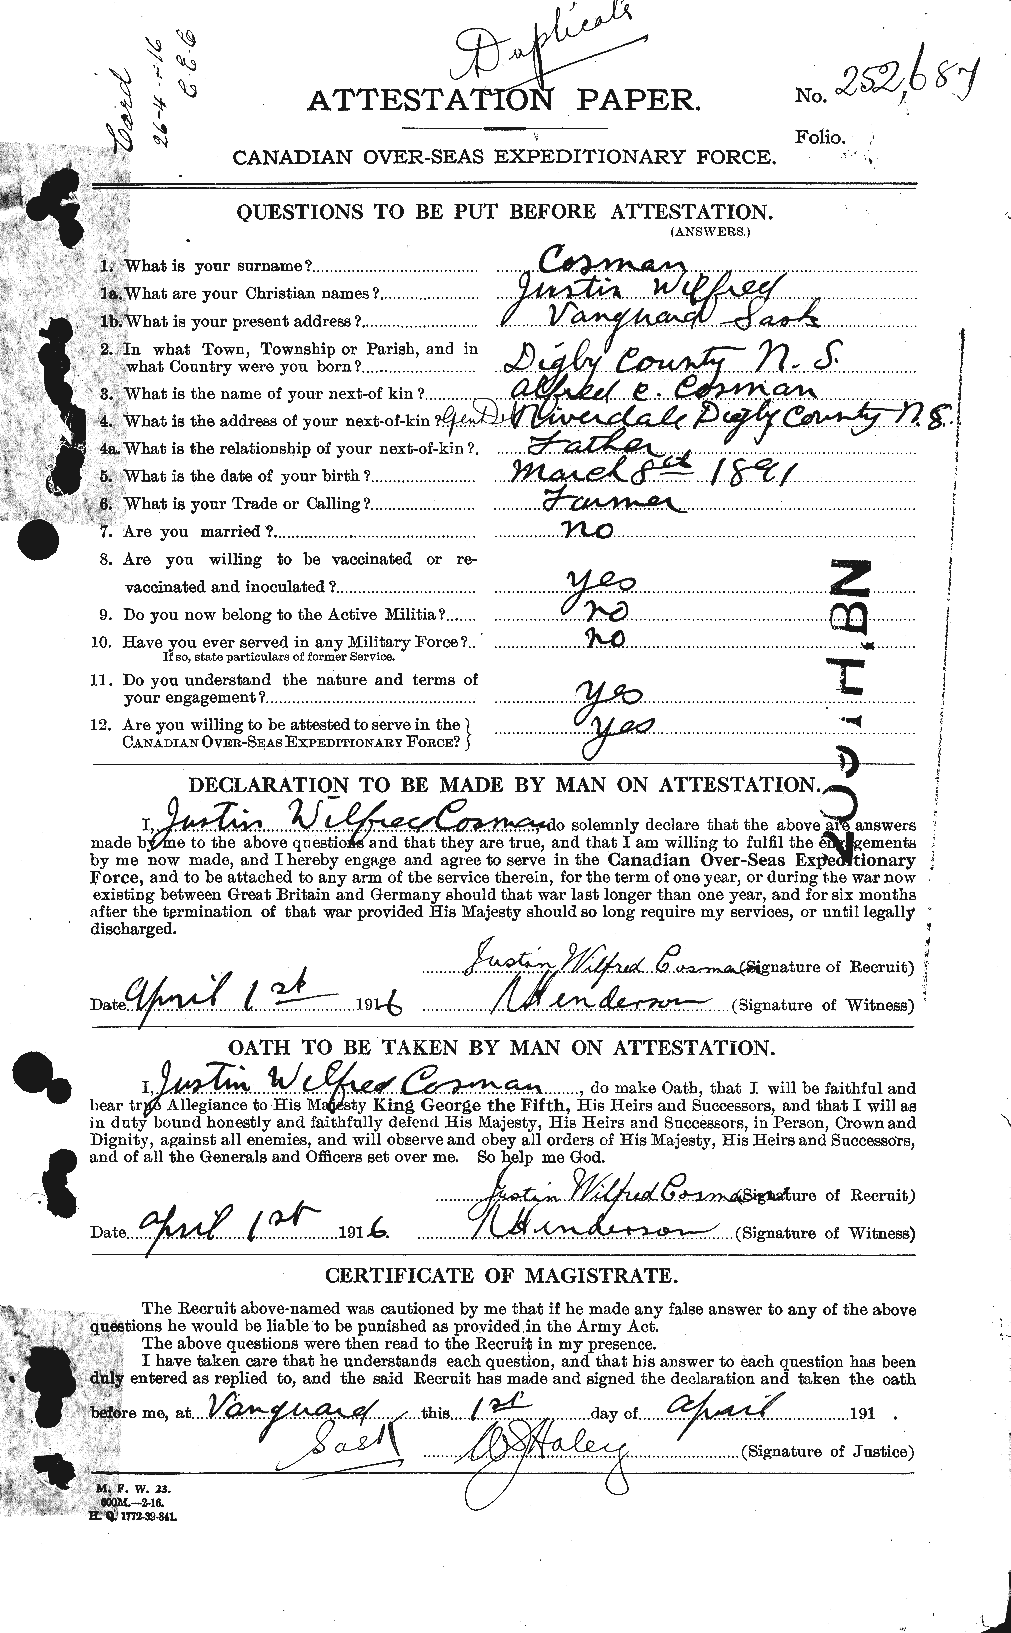 Dossiers du Personnel de la Première Guerre mondiale - CEC 057604a